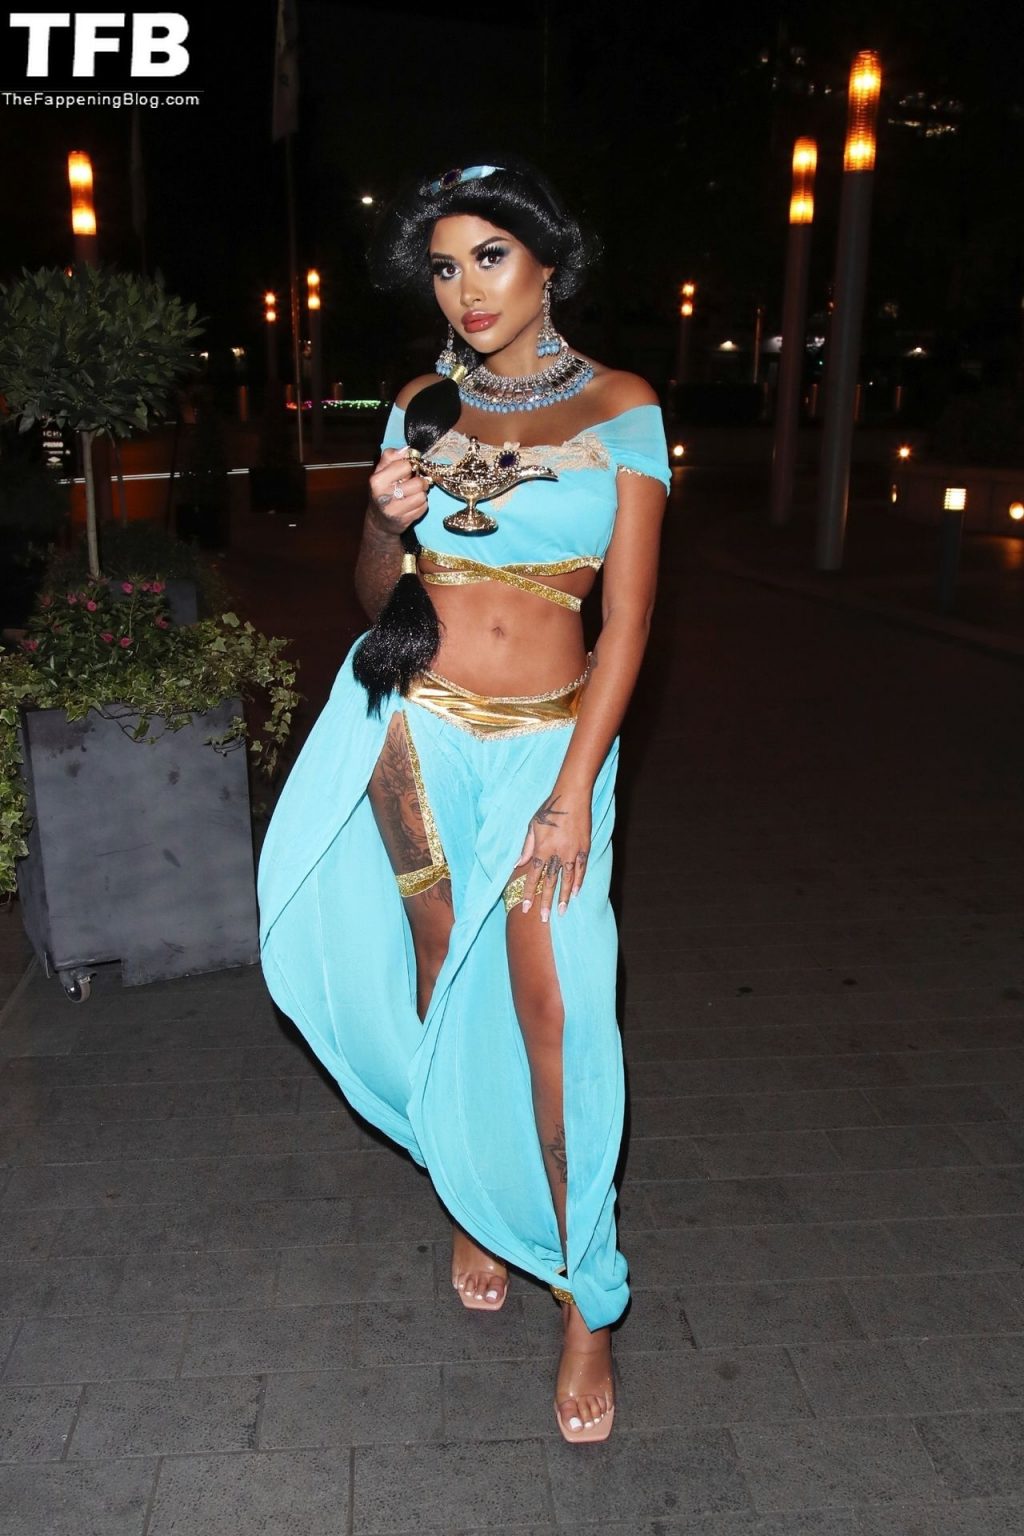 Nikita Jasmine Looks Stunning as Princess Jasmine from “Aladdin” (10 Photos)